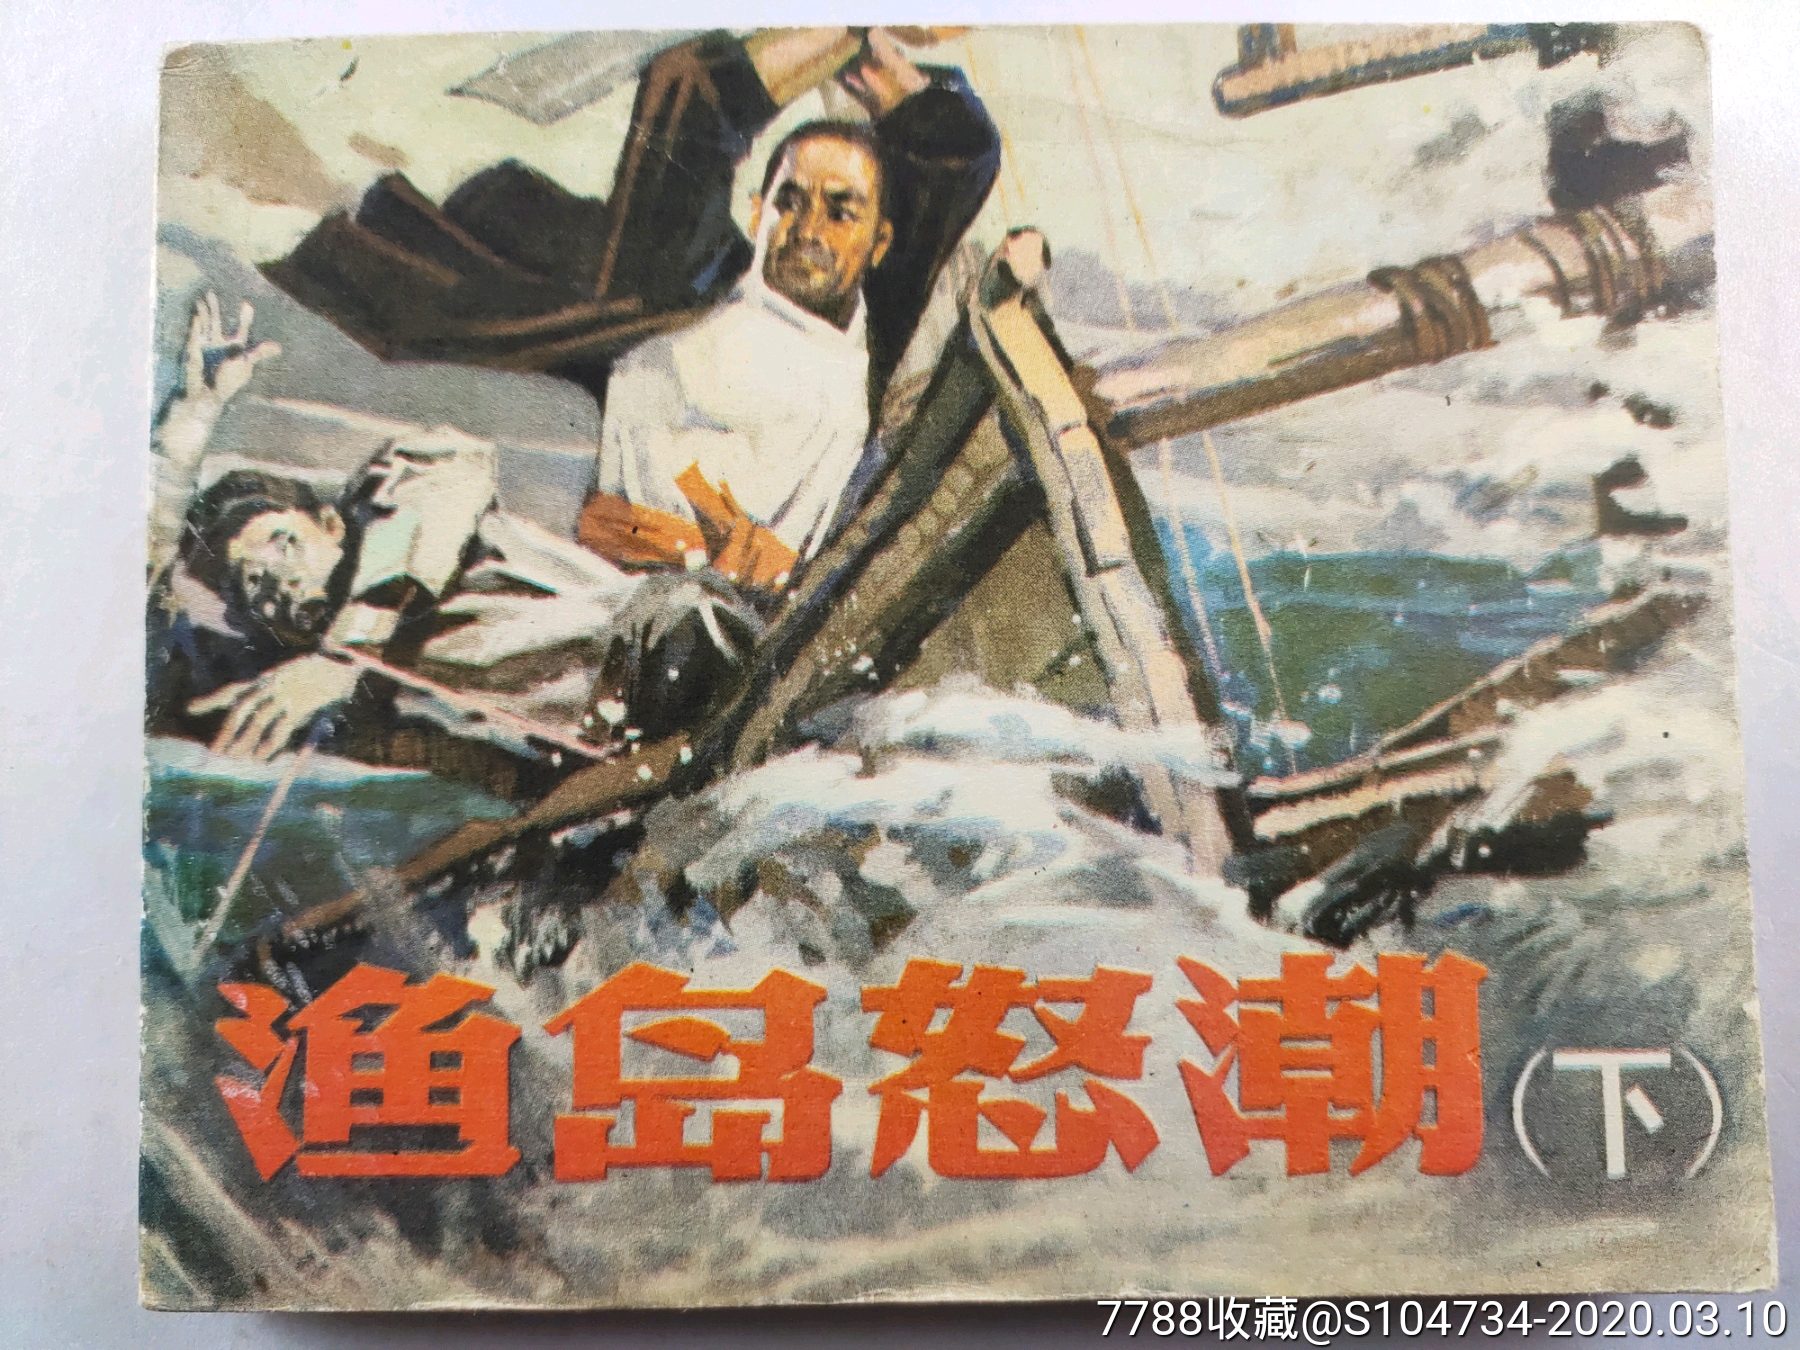 2开电影海报：渔岛怒潮（1977年上映）-价格:130元-se93264939-电影海报-零售-7788收藏__收藏热线